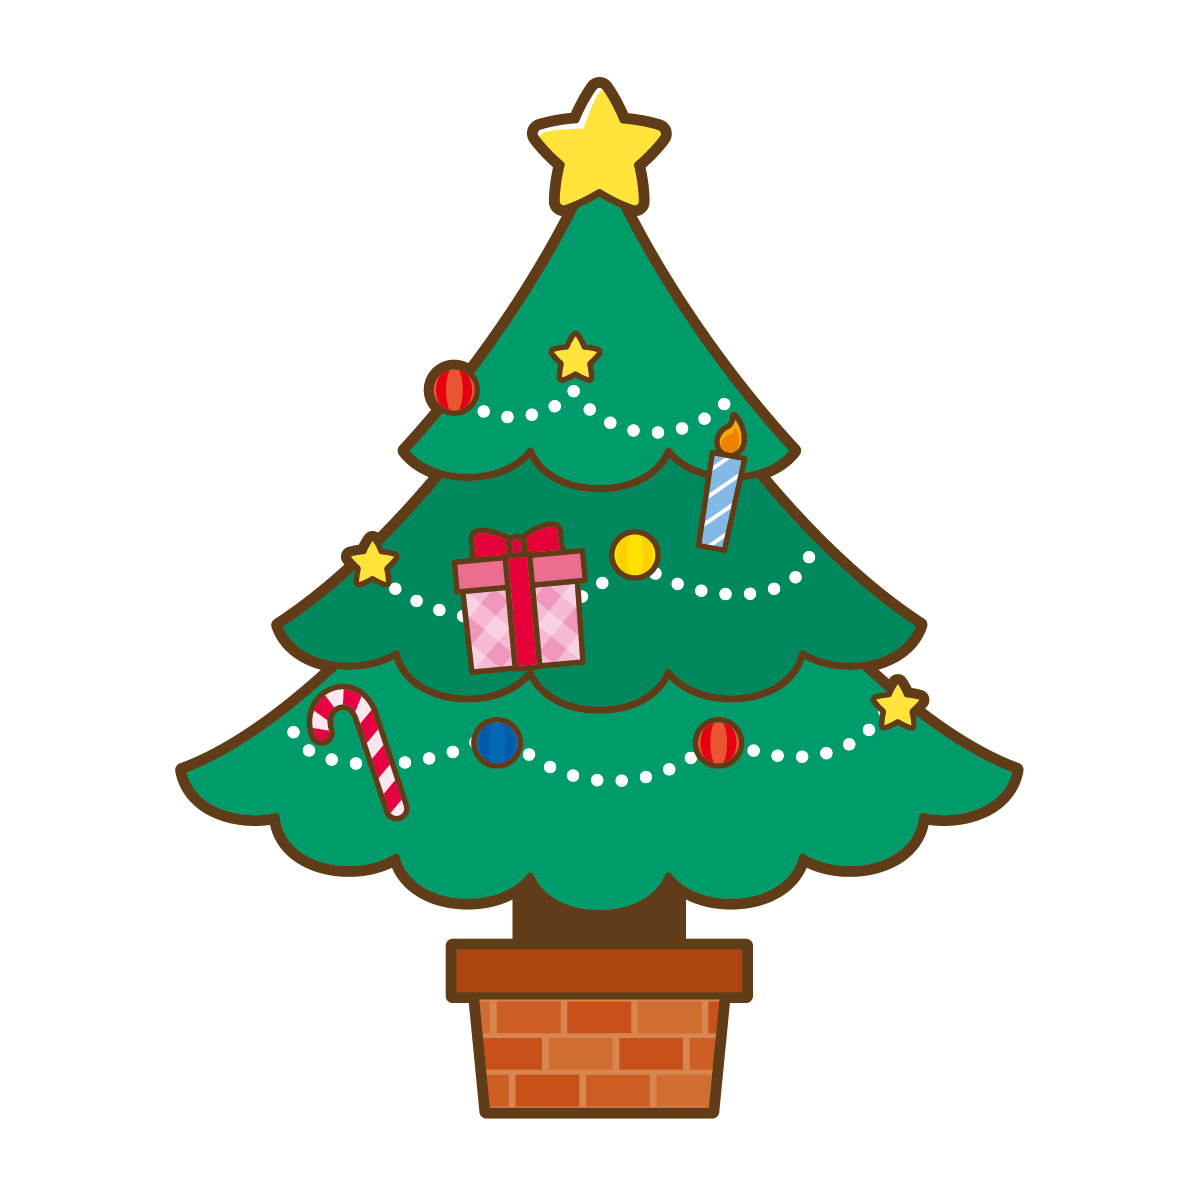 【12月11日・12月12日】クリスマスワークショップ開催♪食品サンプルのクリスマスクッキーマグネットといちごカップの小物入れをつくろう！【エイスクエア草津】